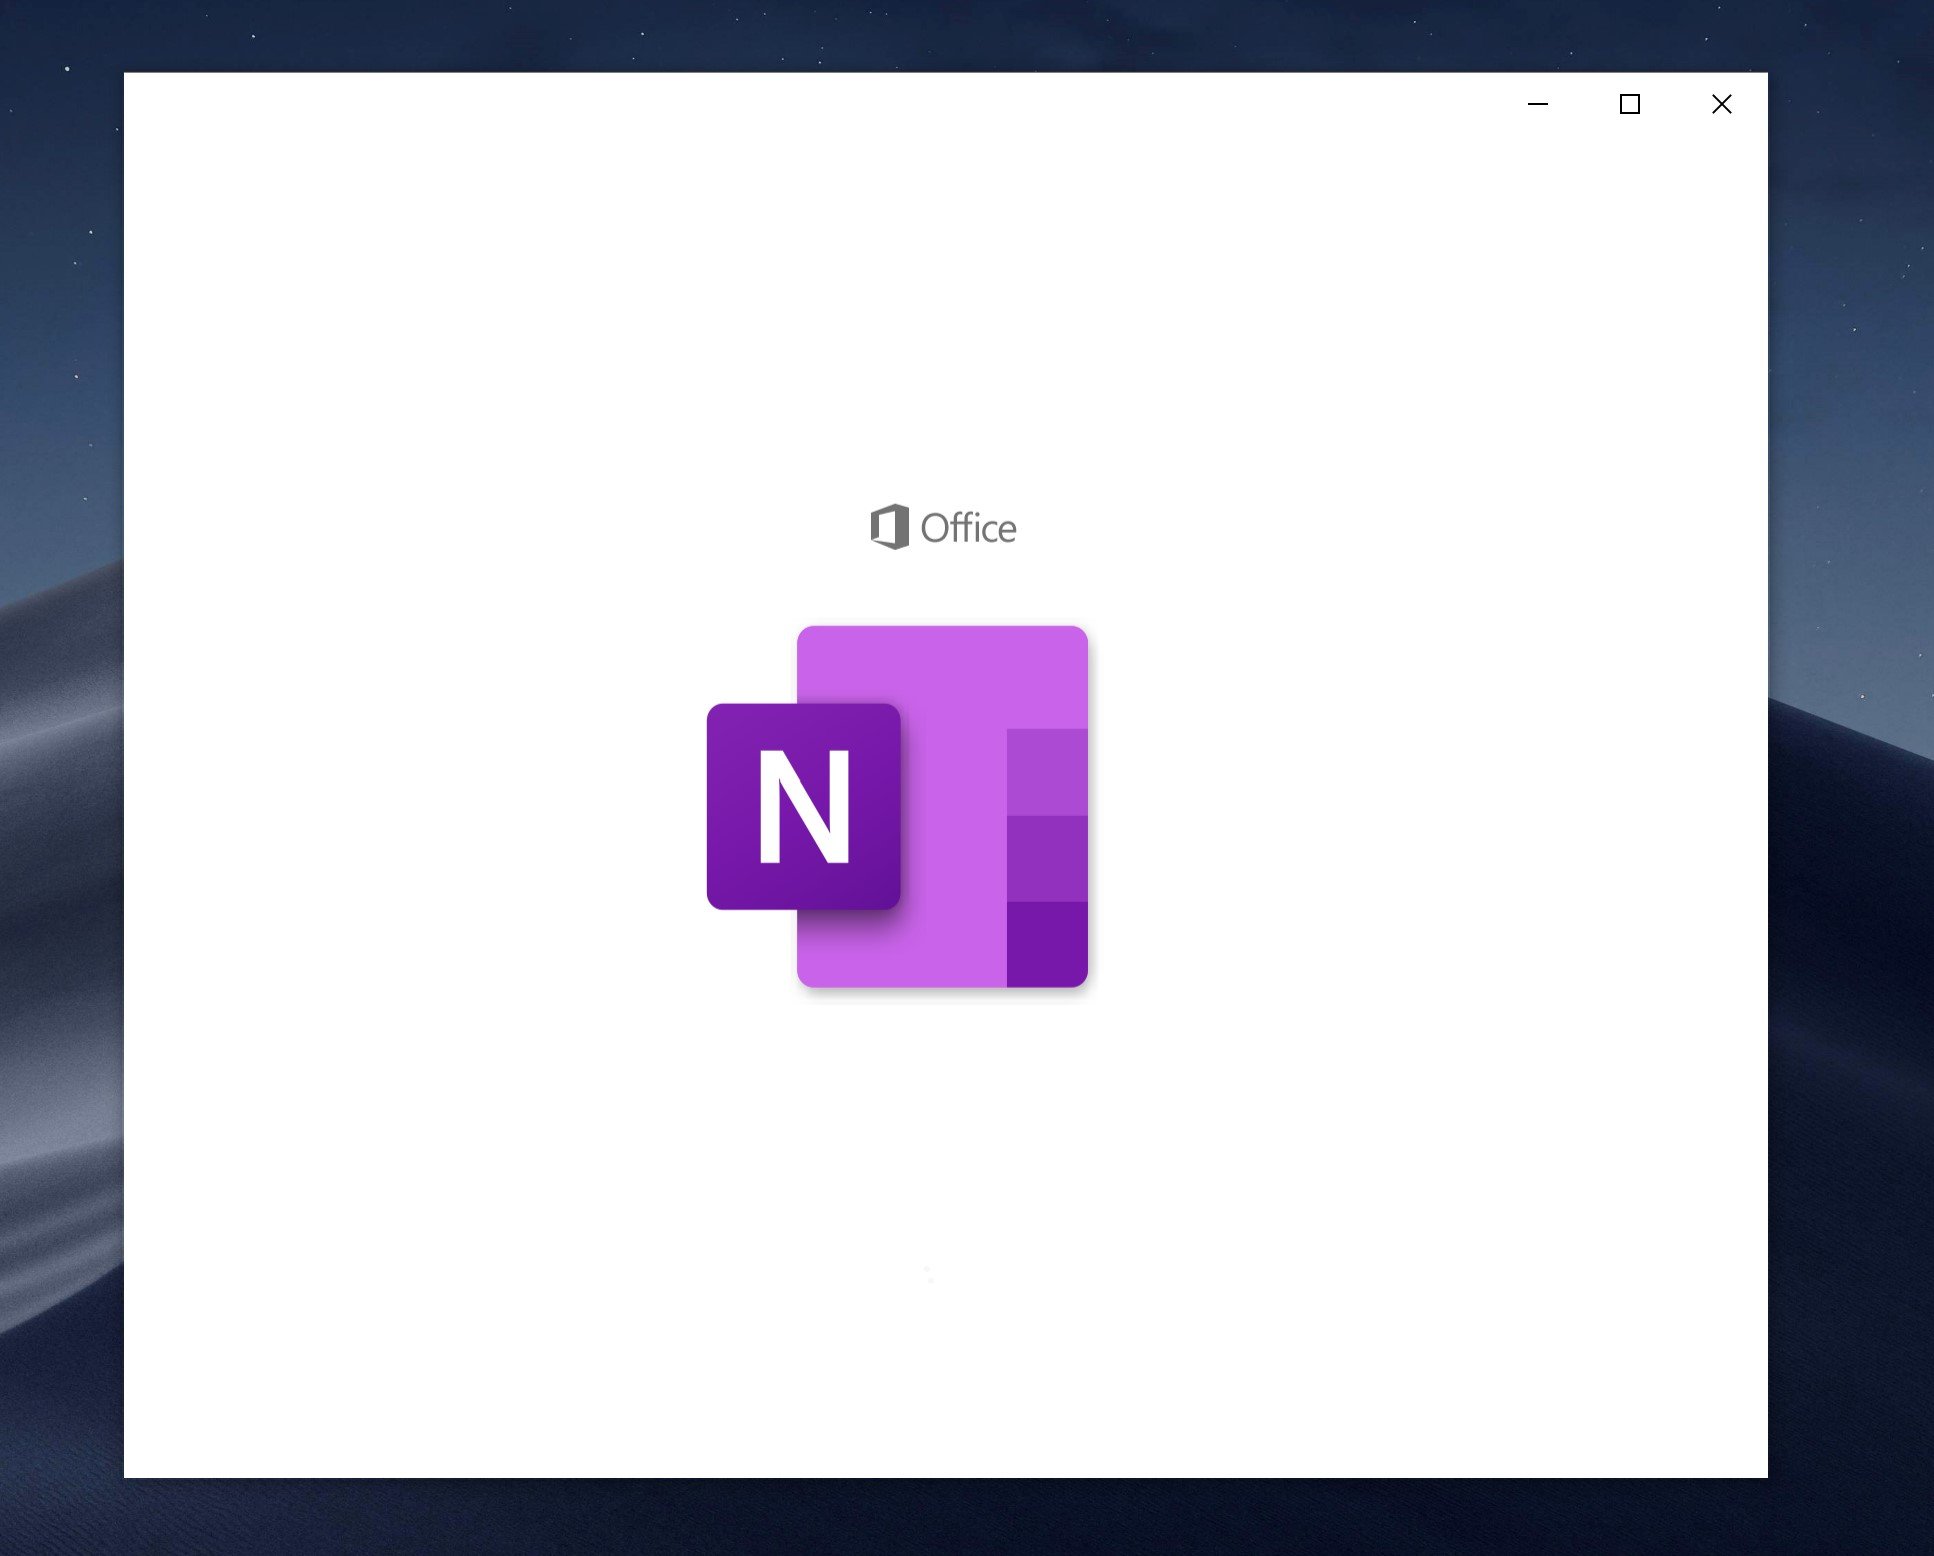 onenote-new-icon-win10.jpg